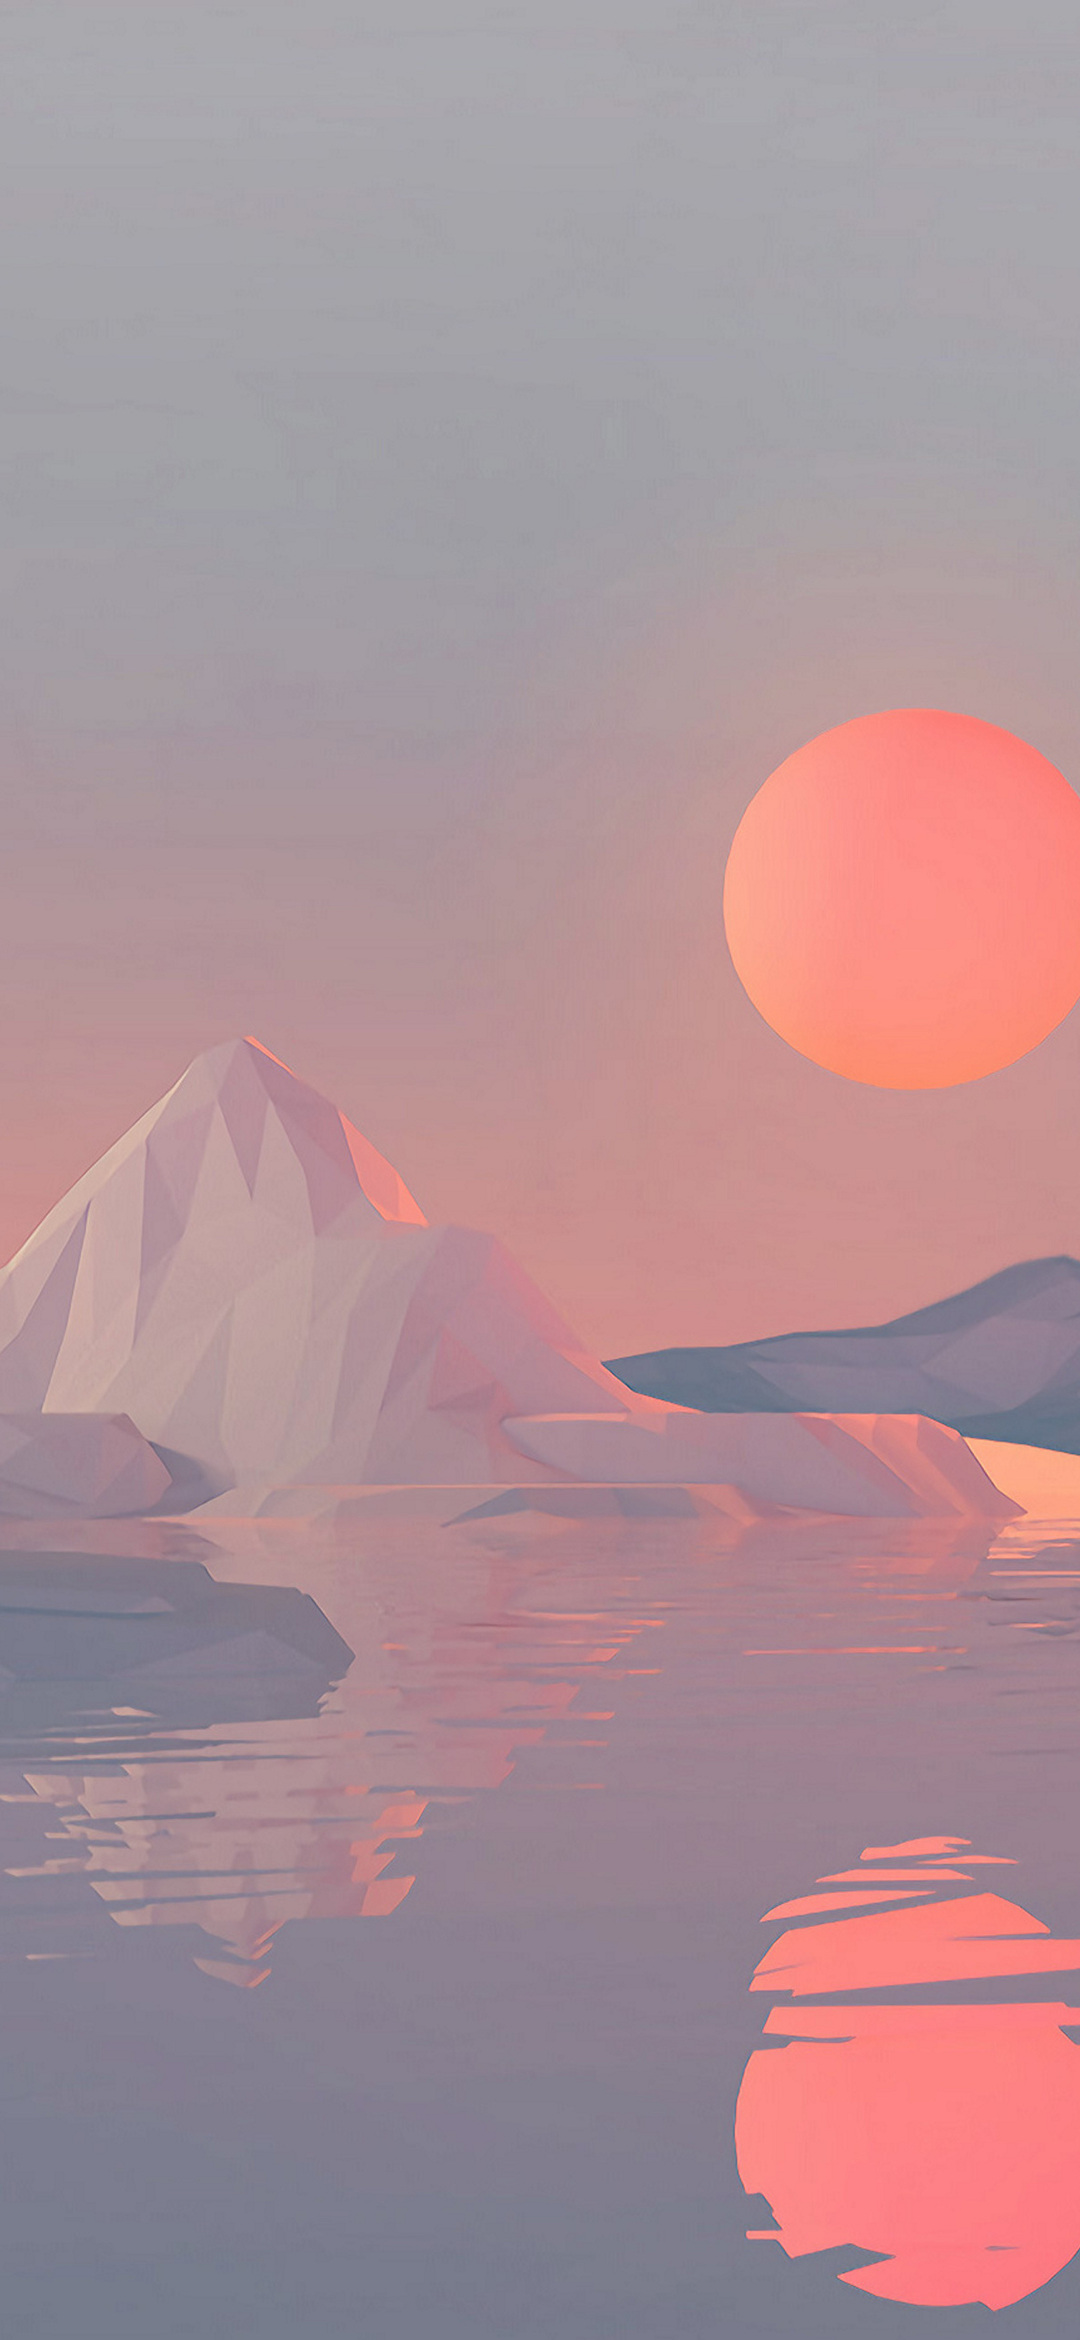 夕日と氷山と海のイラスト Google Pixel 4a Android スマホ壁紙 待ち受け スマラン